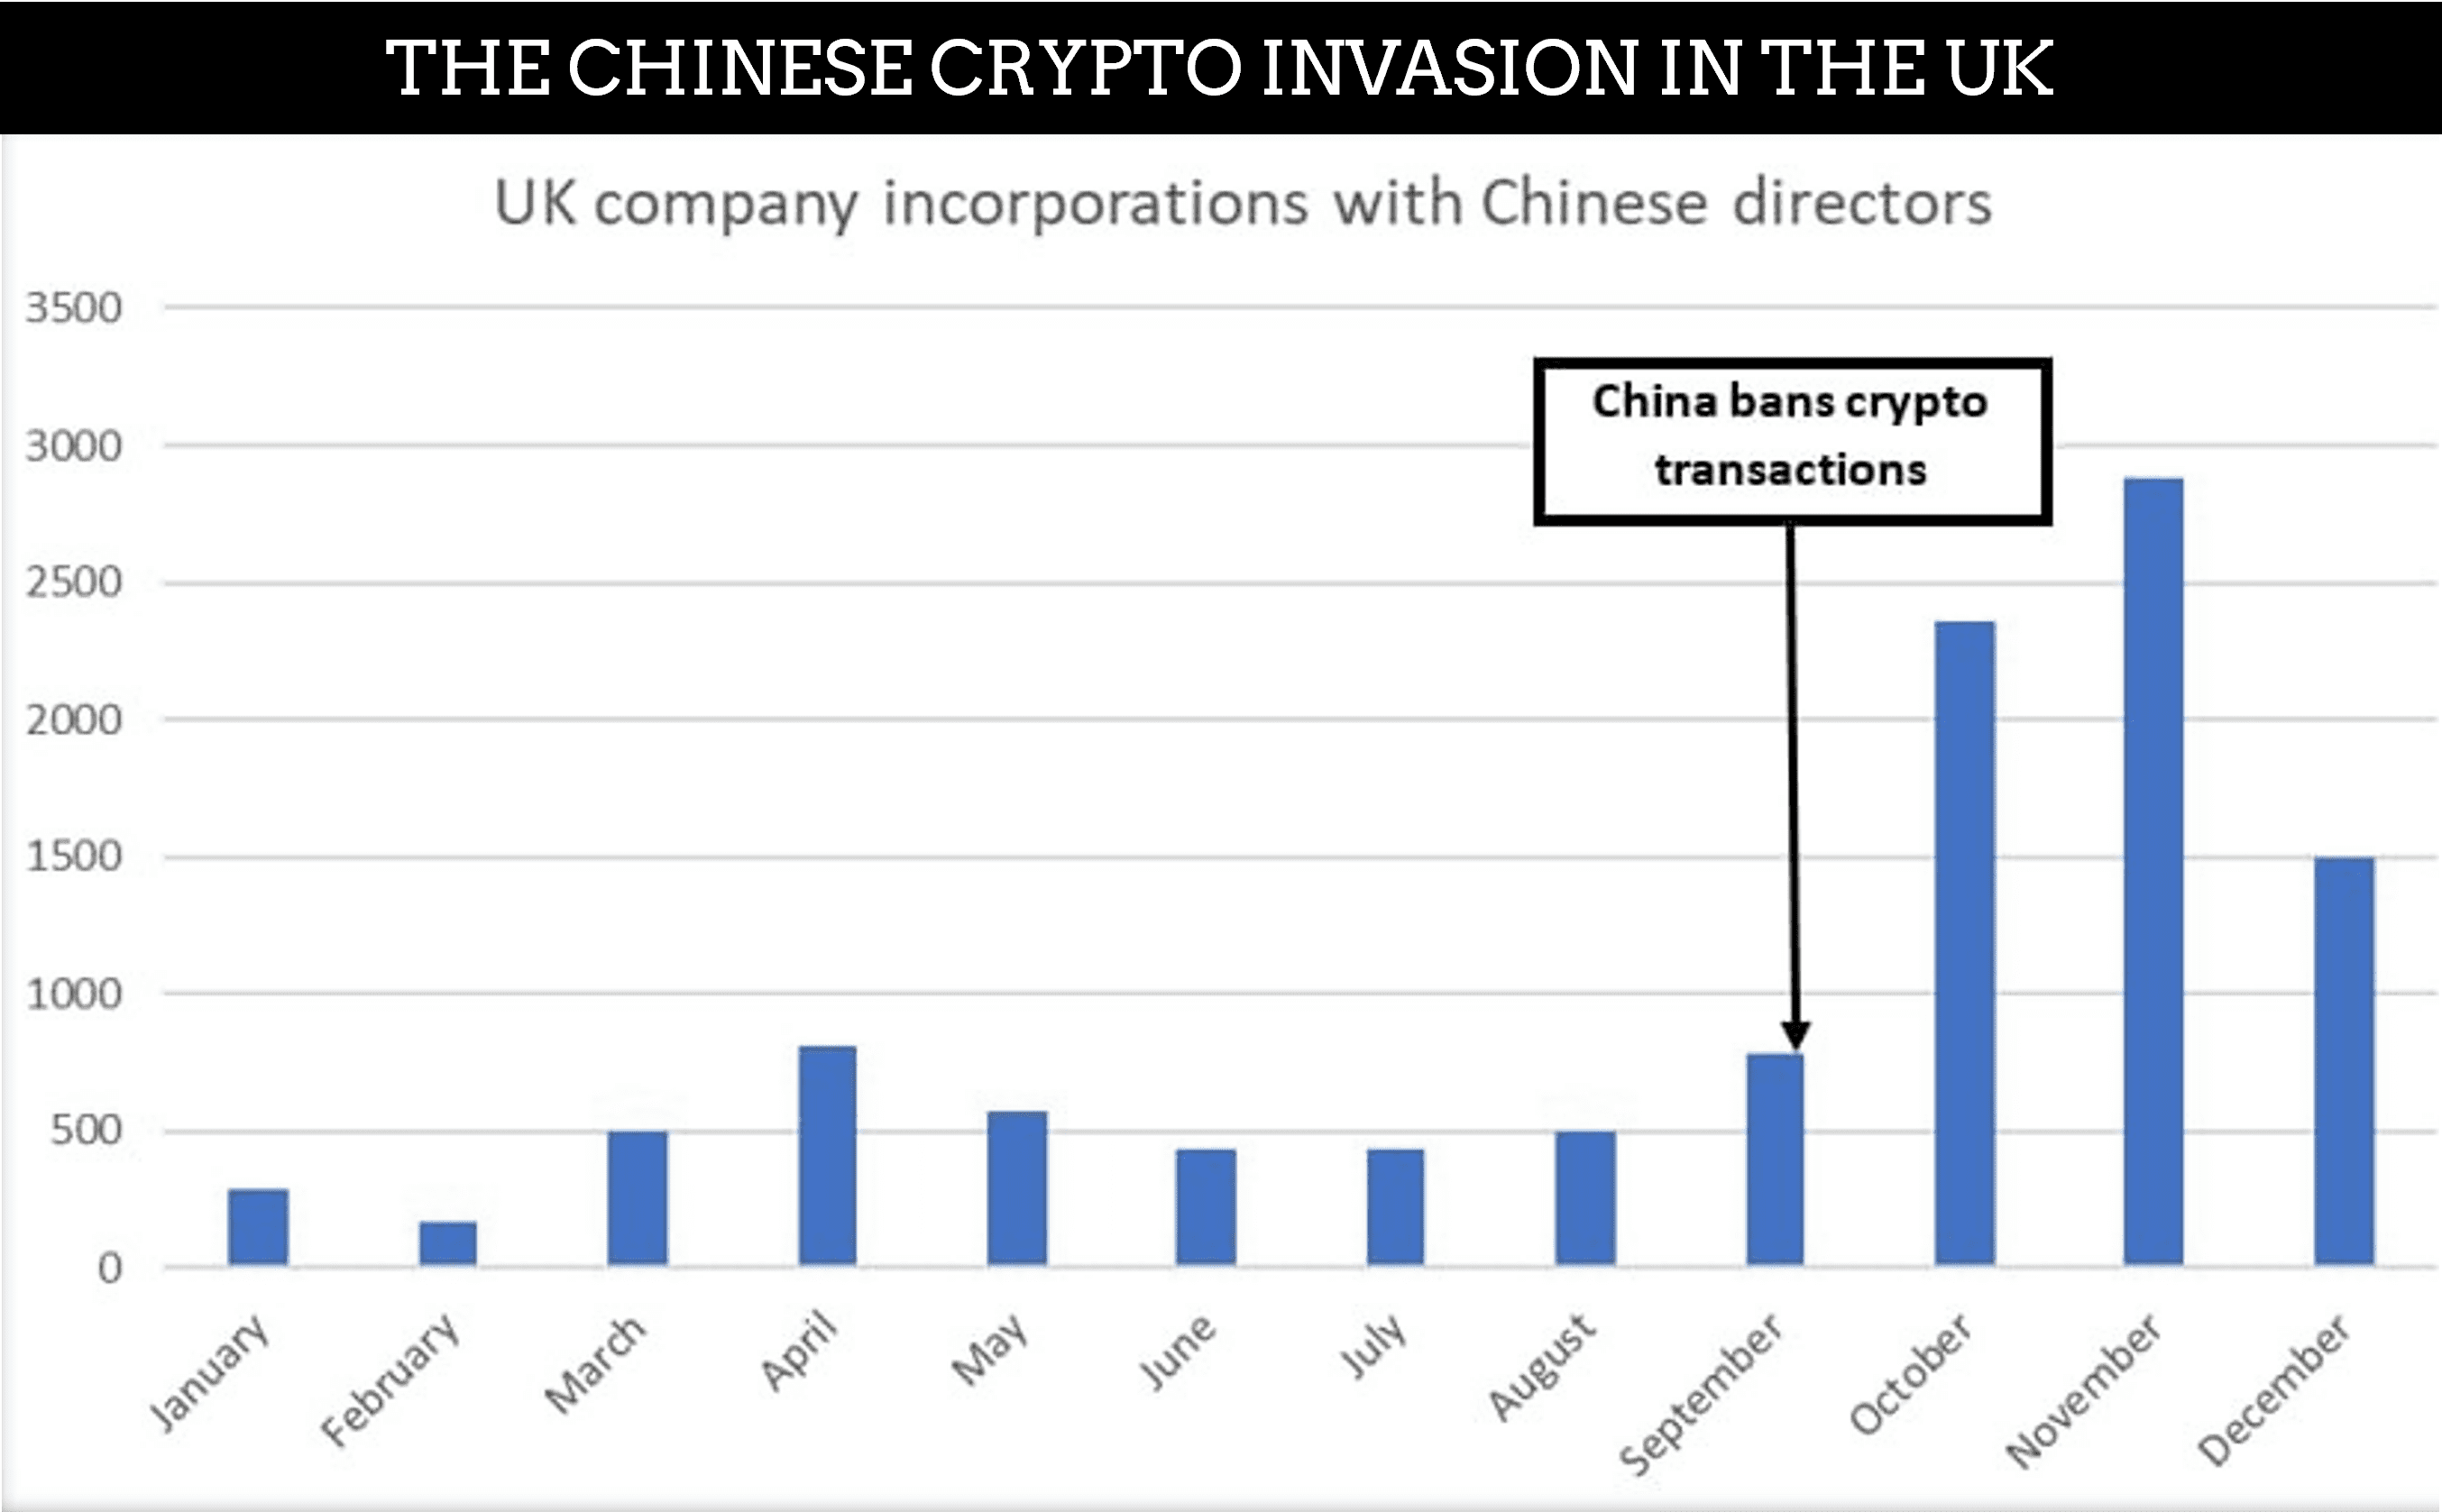 The Chinese Crypto Invesaion Statistics